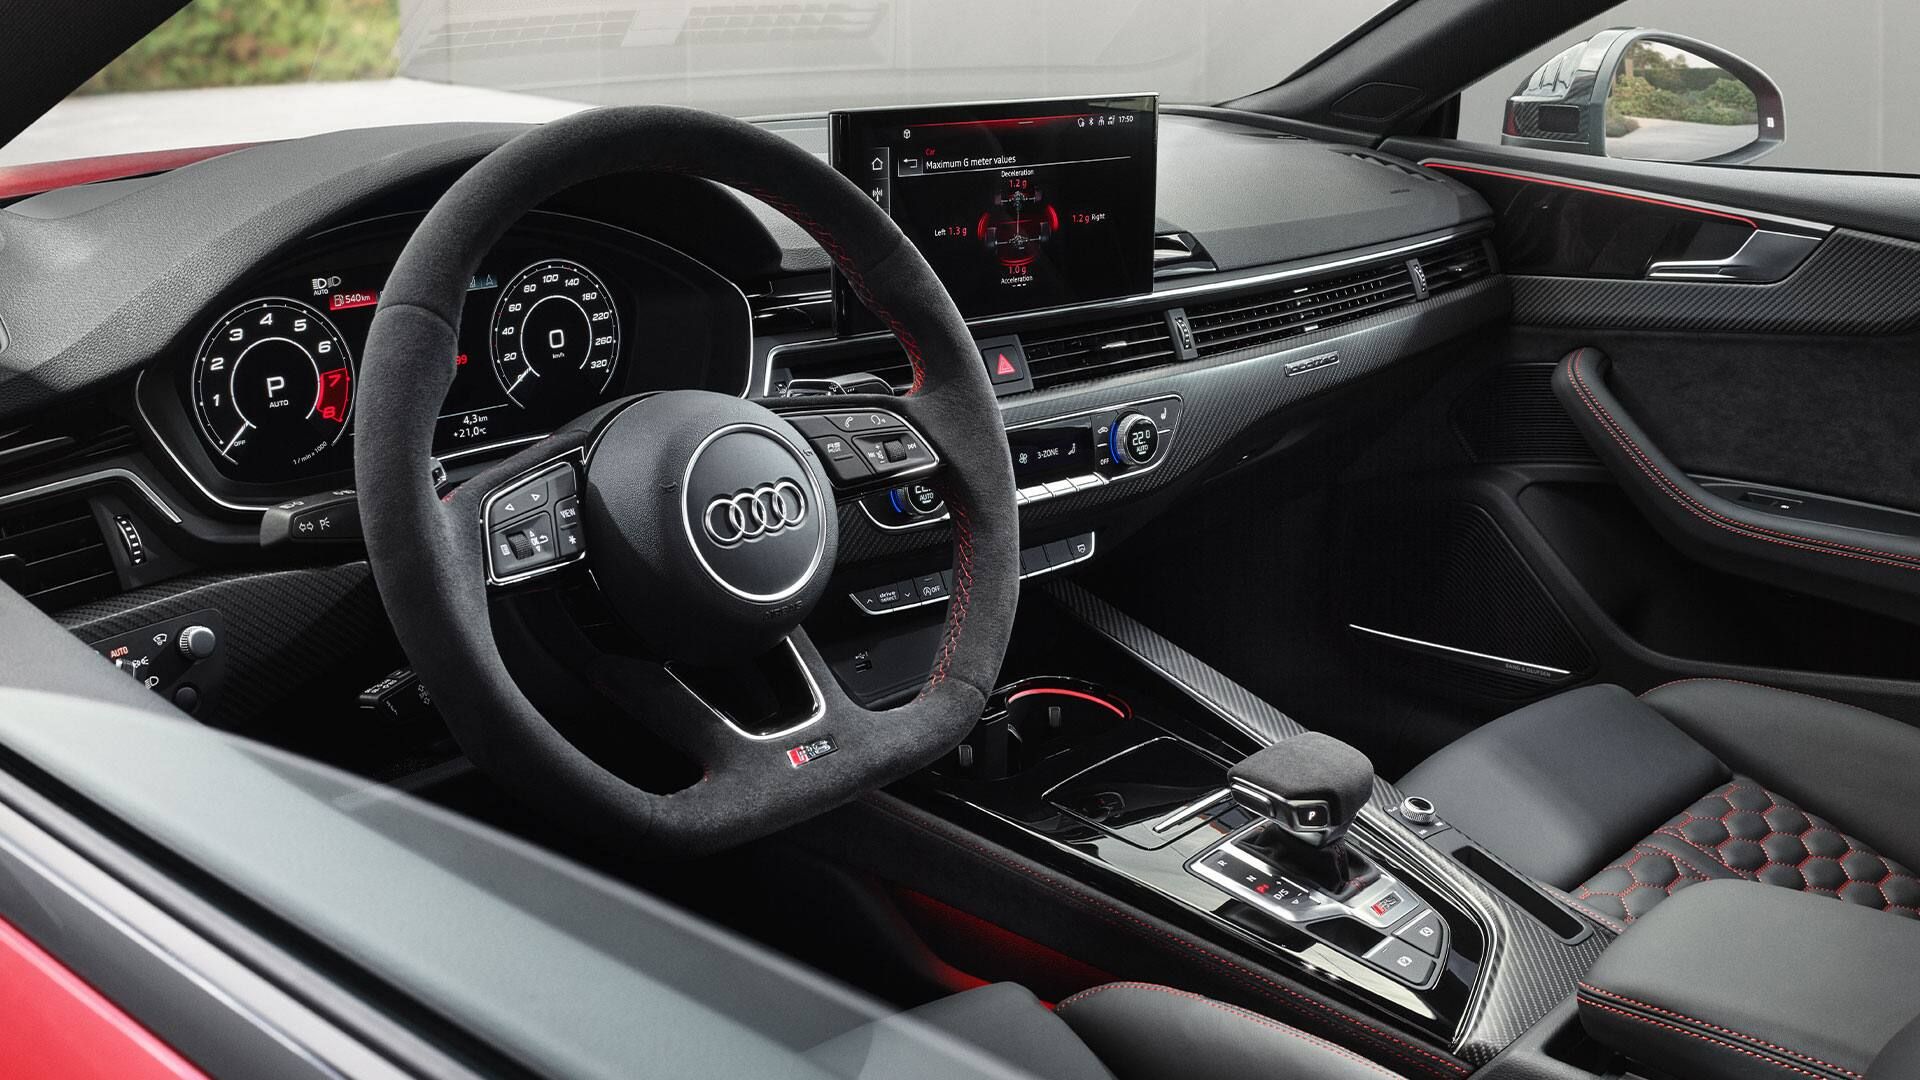 Innenansicht des Audi RS5 Coupé